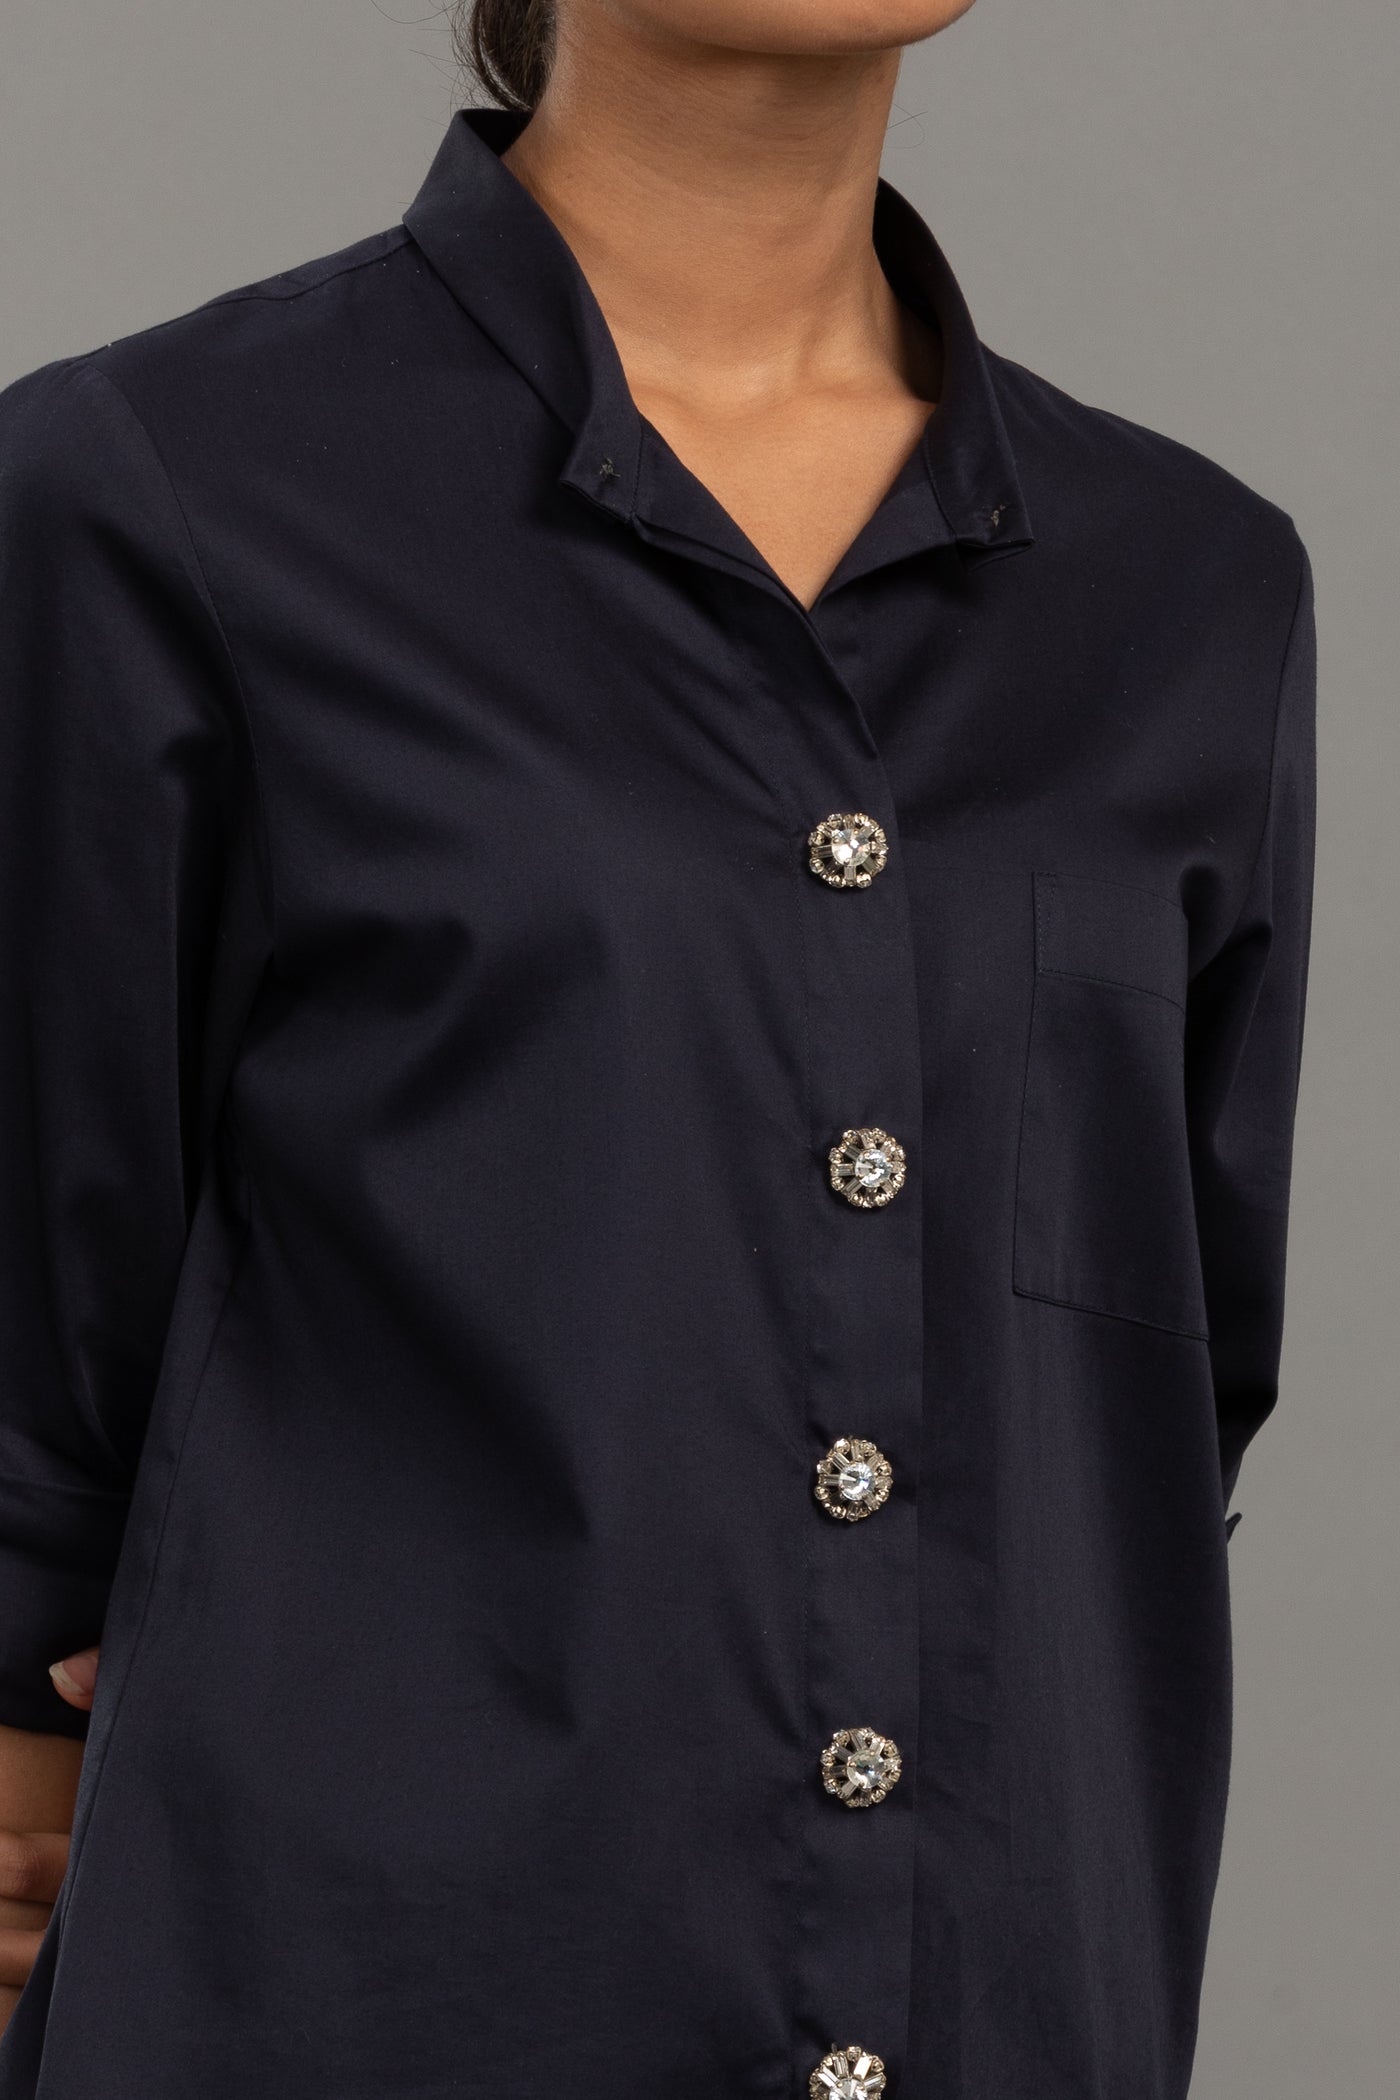 Swarovski  Button Shirt